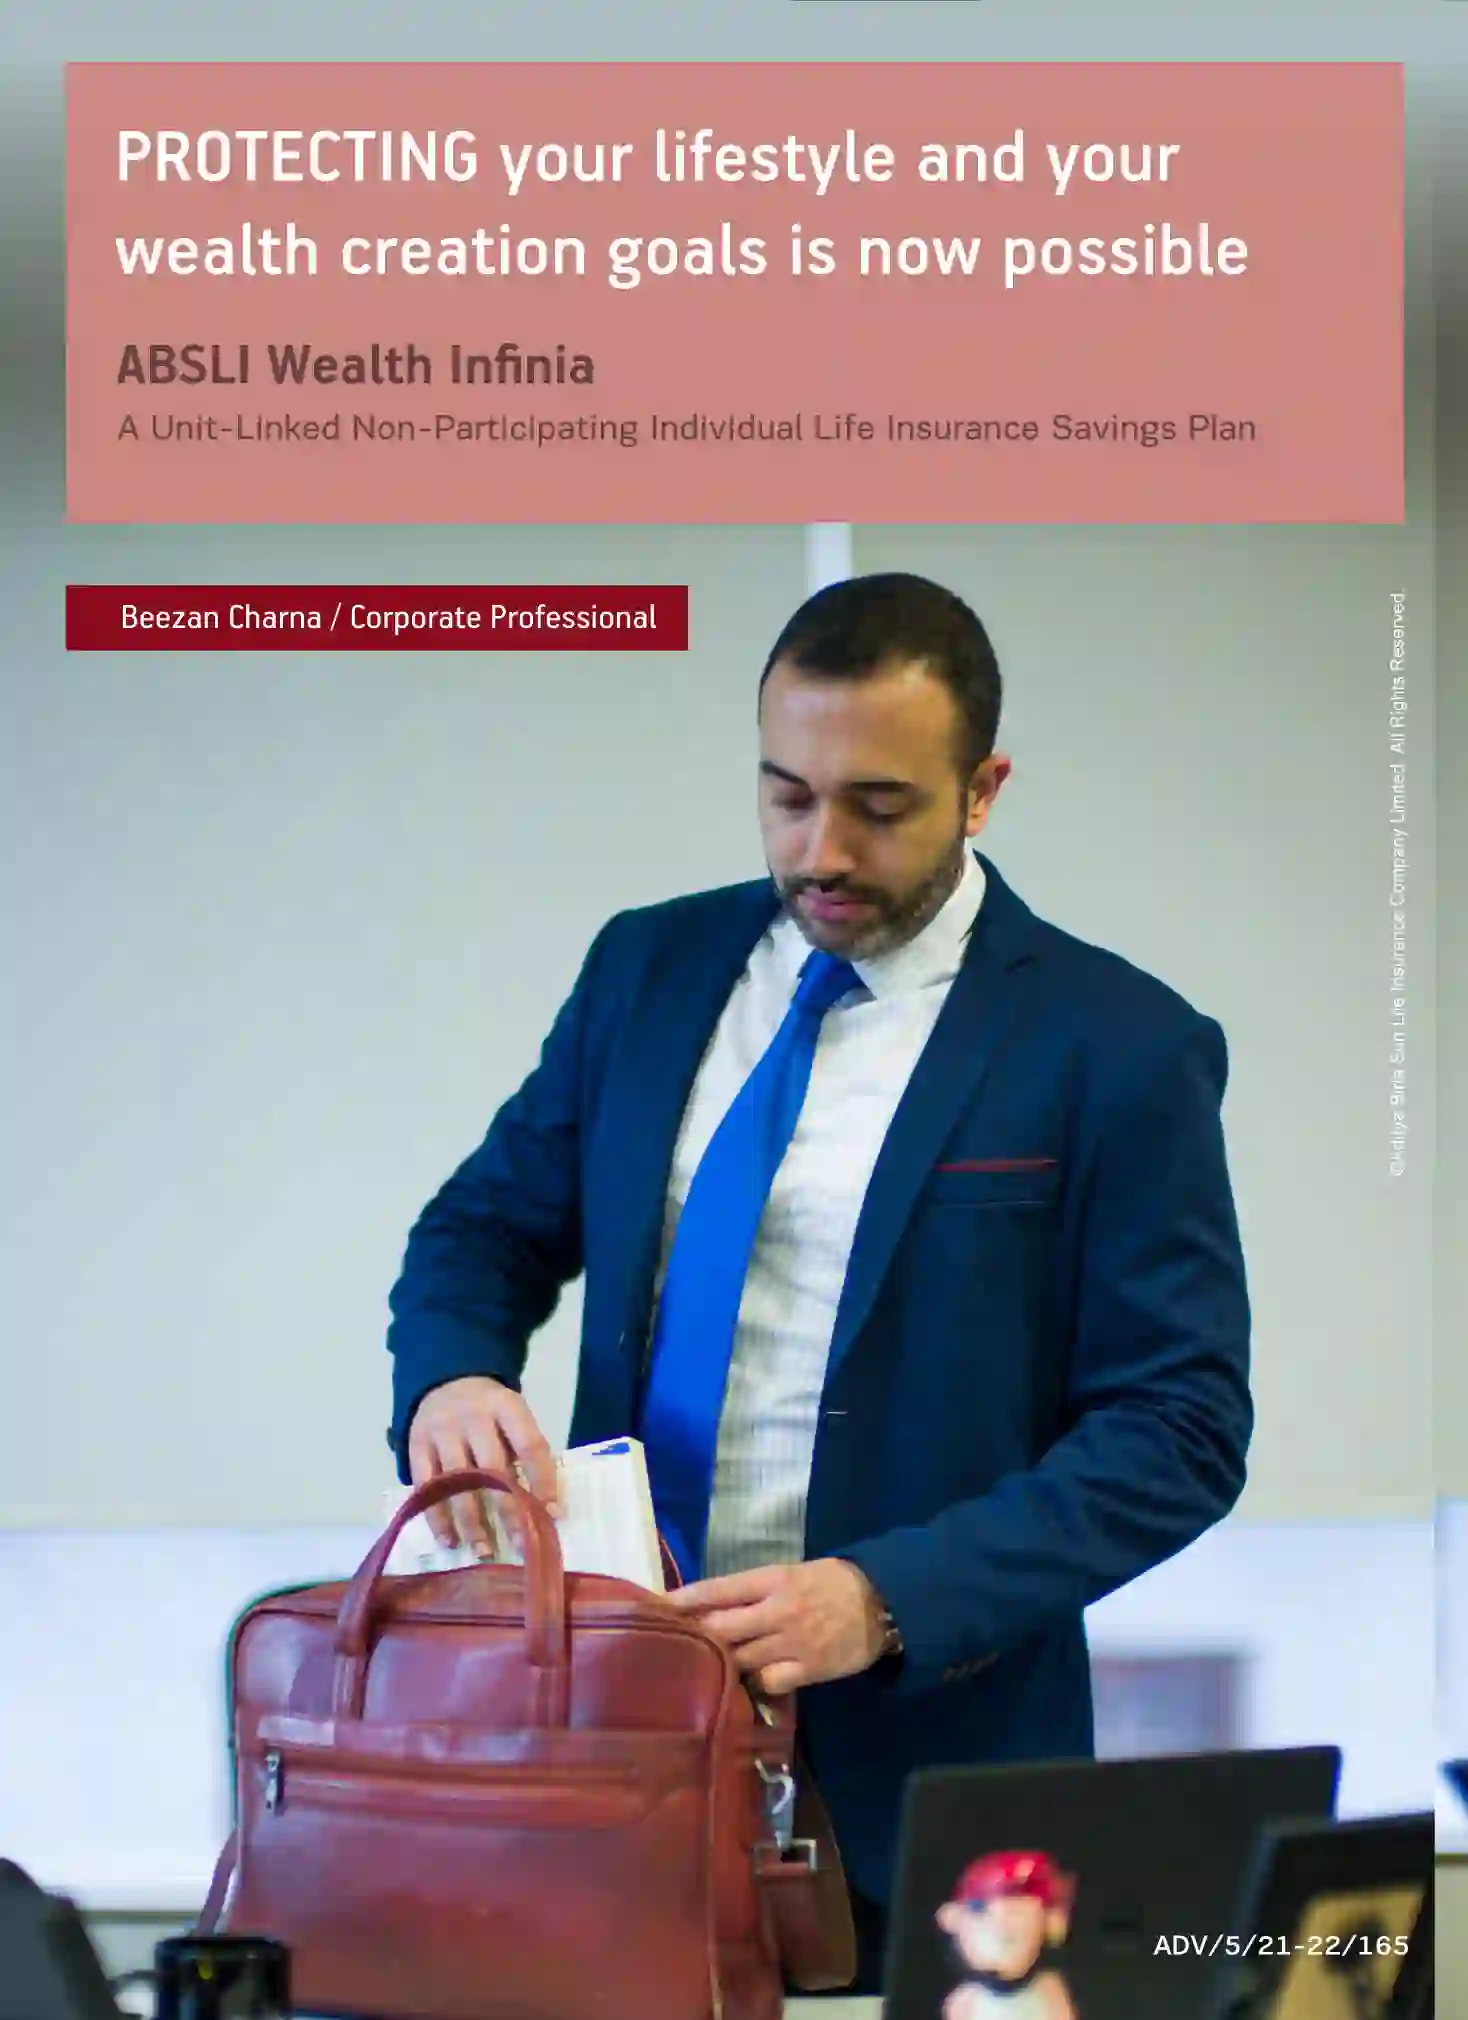 ABSLI Wealth Infinia (ULIP Plan)